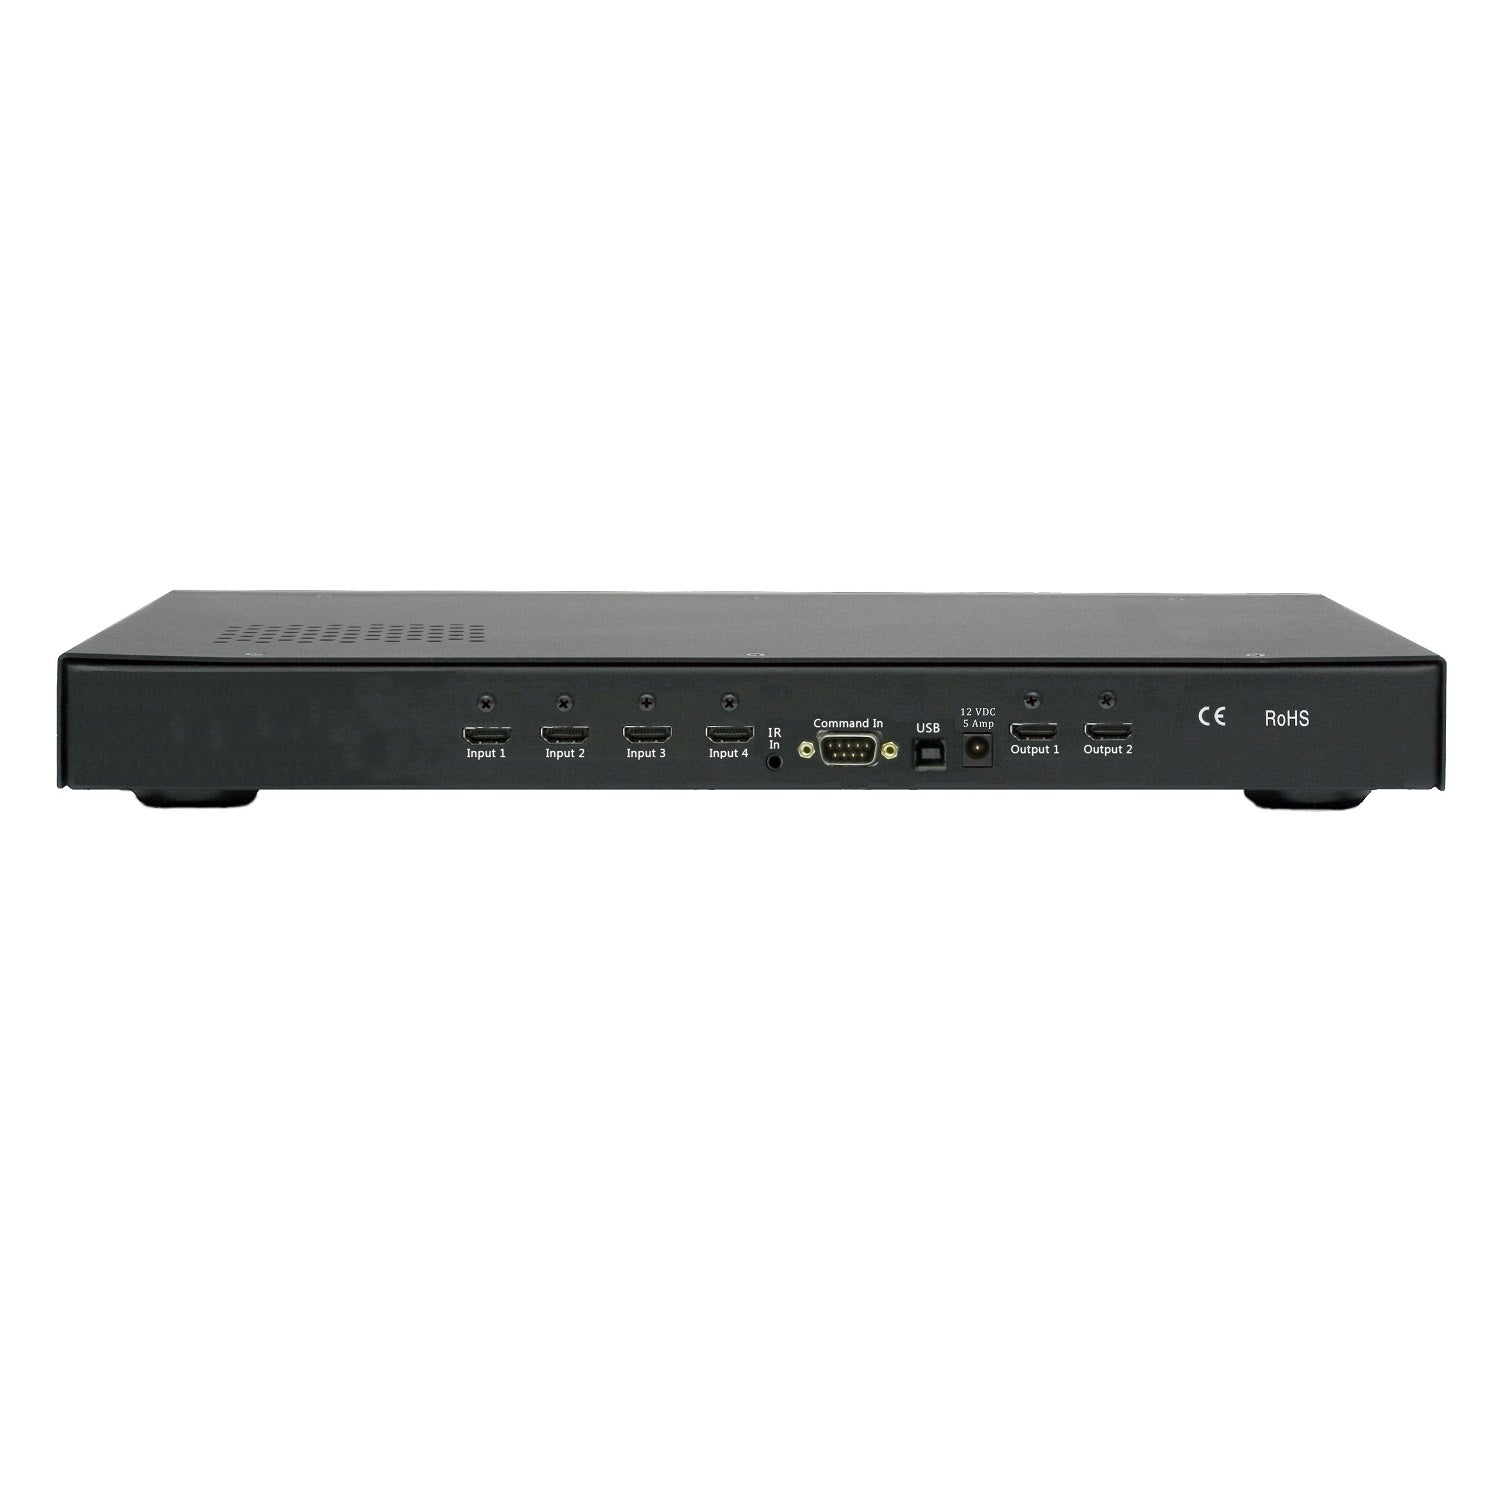 Lumagen Radiance Pro 4242+ Ultra-HD, 4(18G)x2(9G). 1U rack ears included